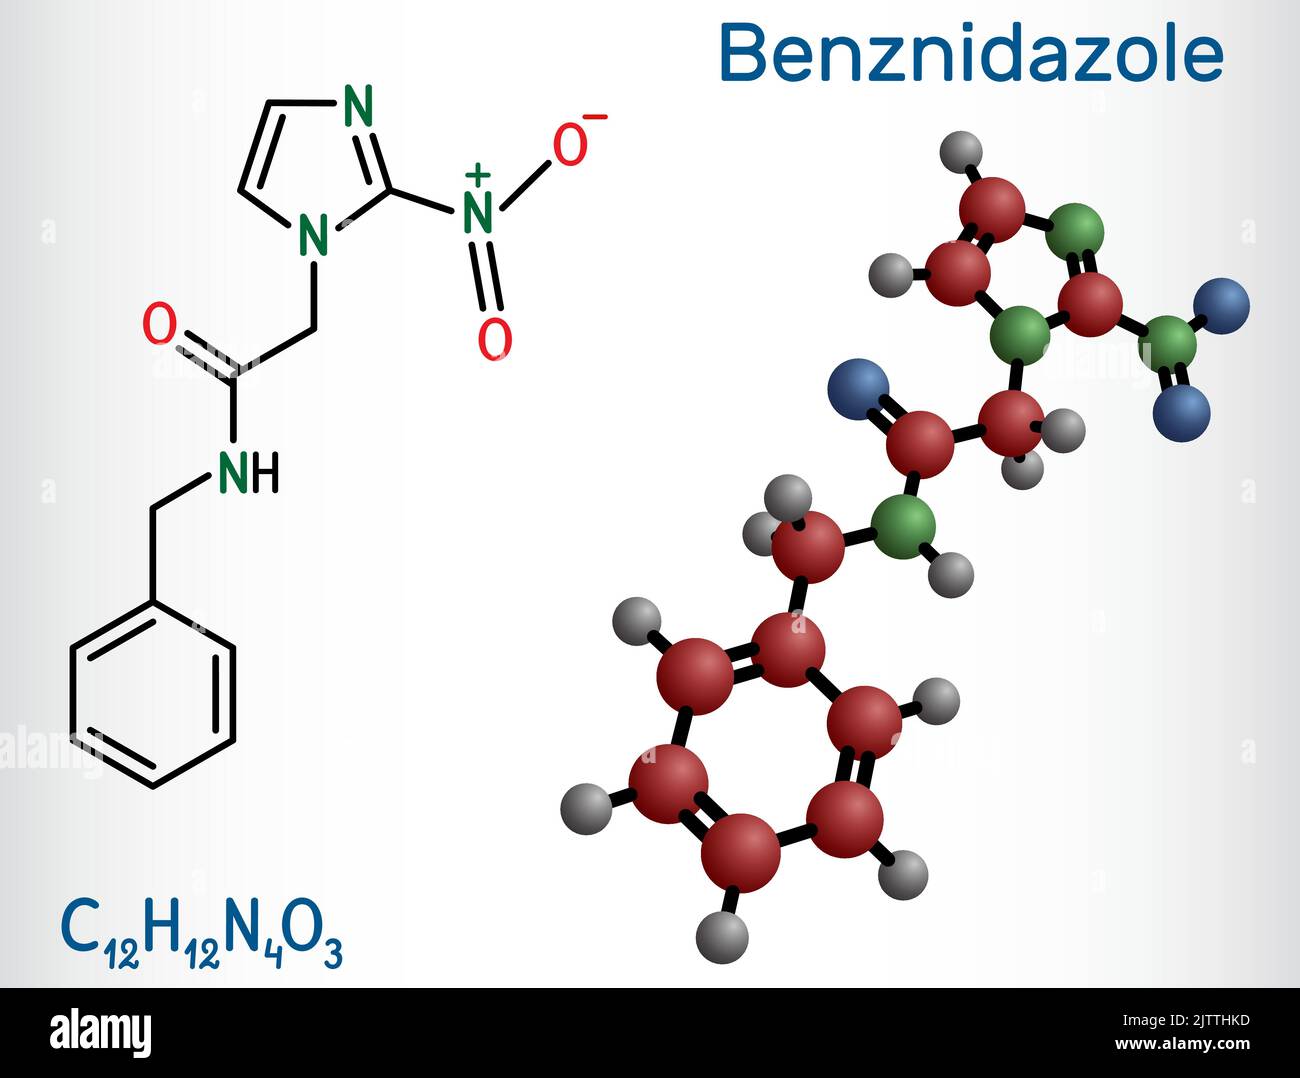 Molécule de benznidazole. Il s'agit d'un médicament antiparasite utilisé dans le traitement de la maladie de Chagas. Formule chimique structurelle, modèle moléculaire. Vecteur illustrat Illustration de Vecteur